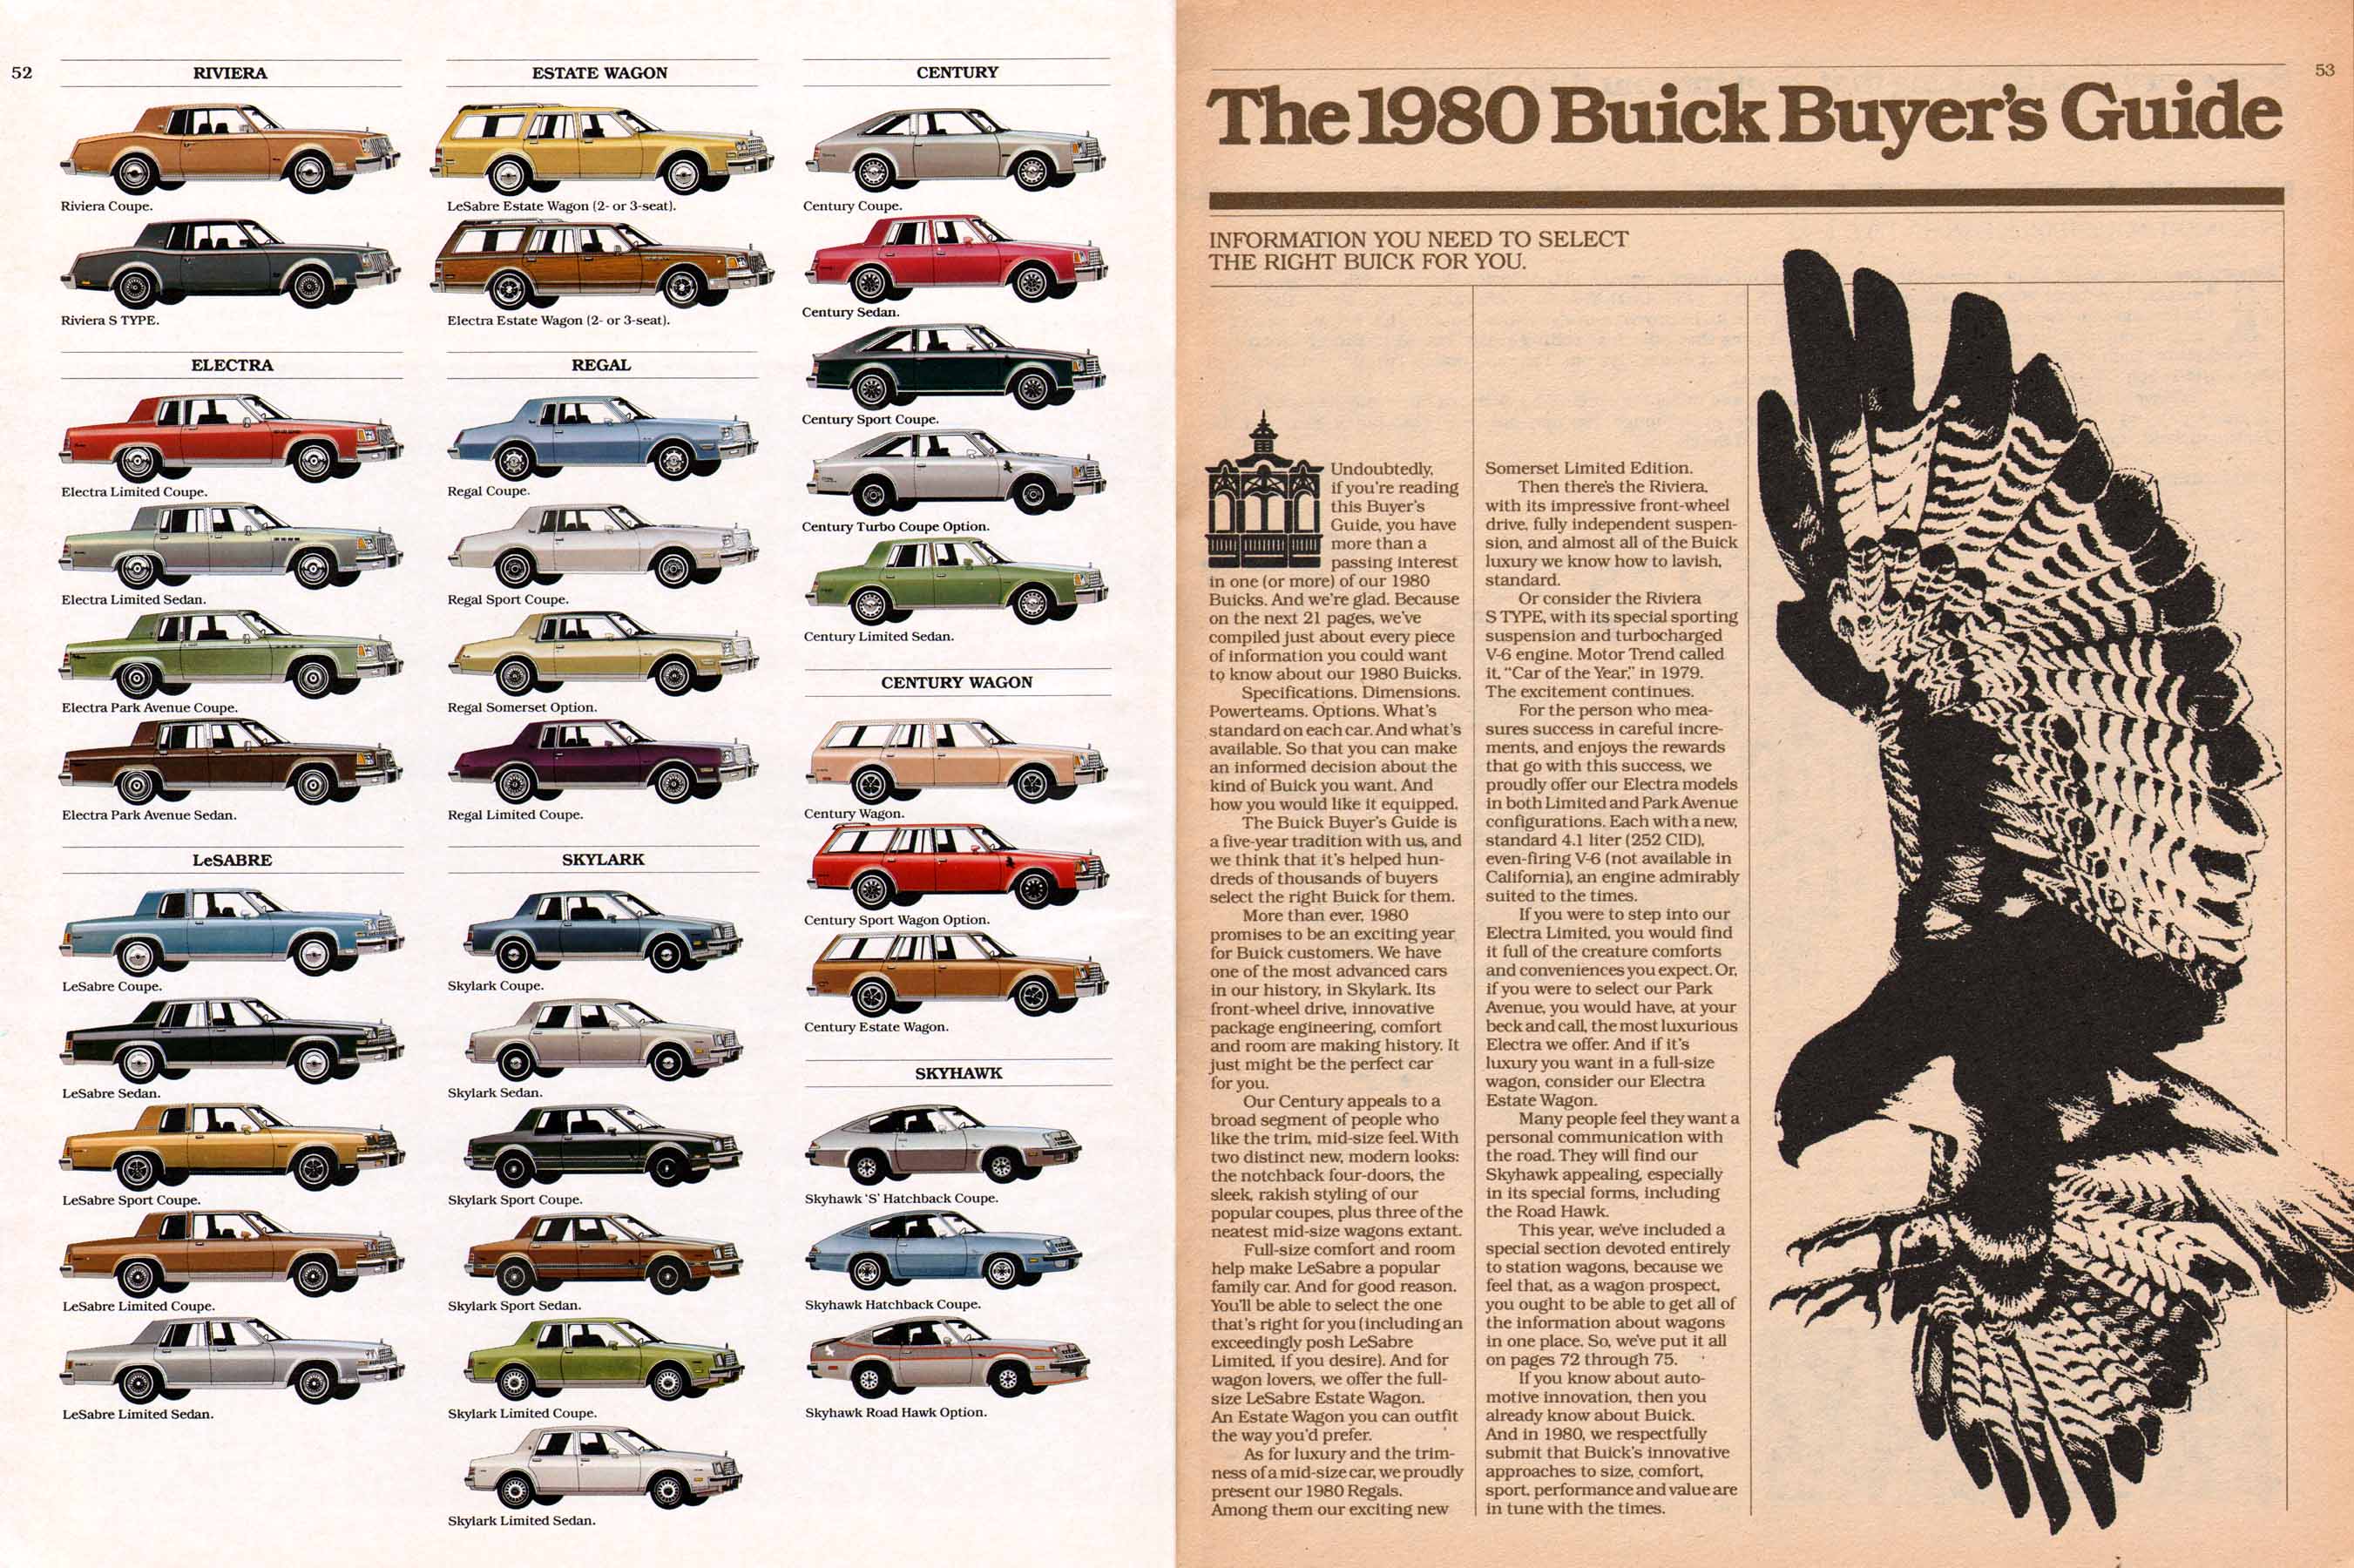 1980 Buick Full Line Prestige-52-53